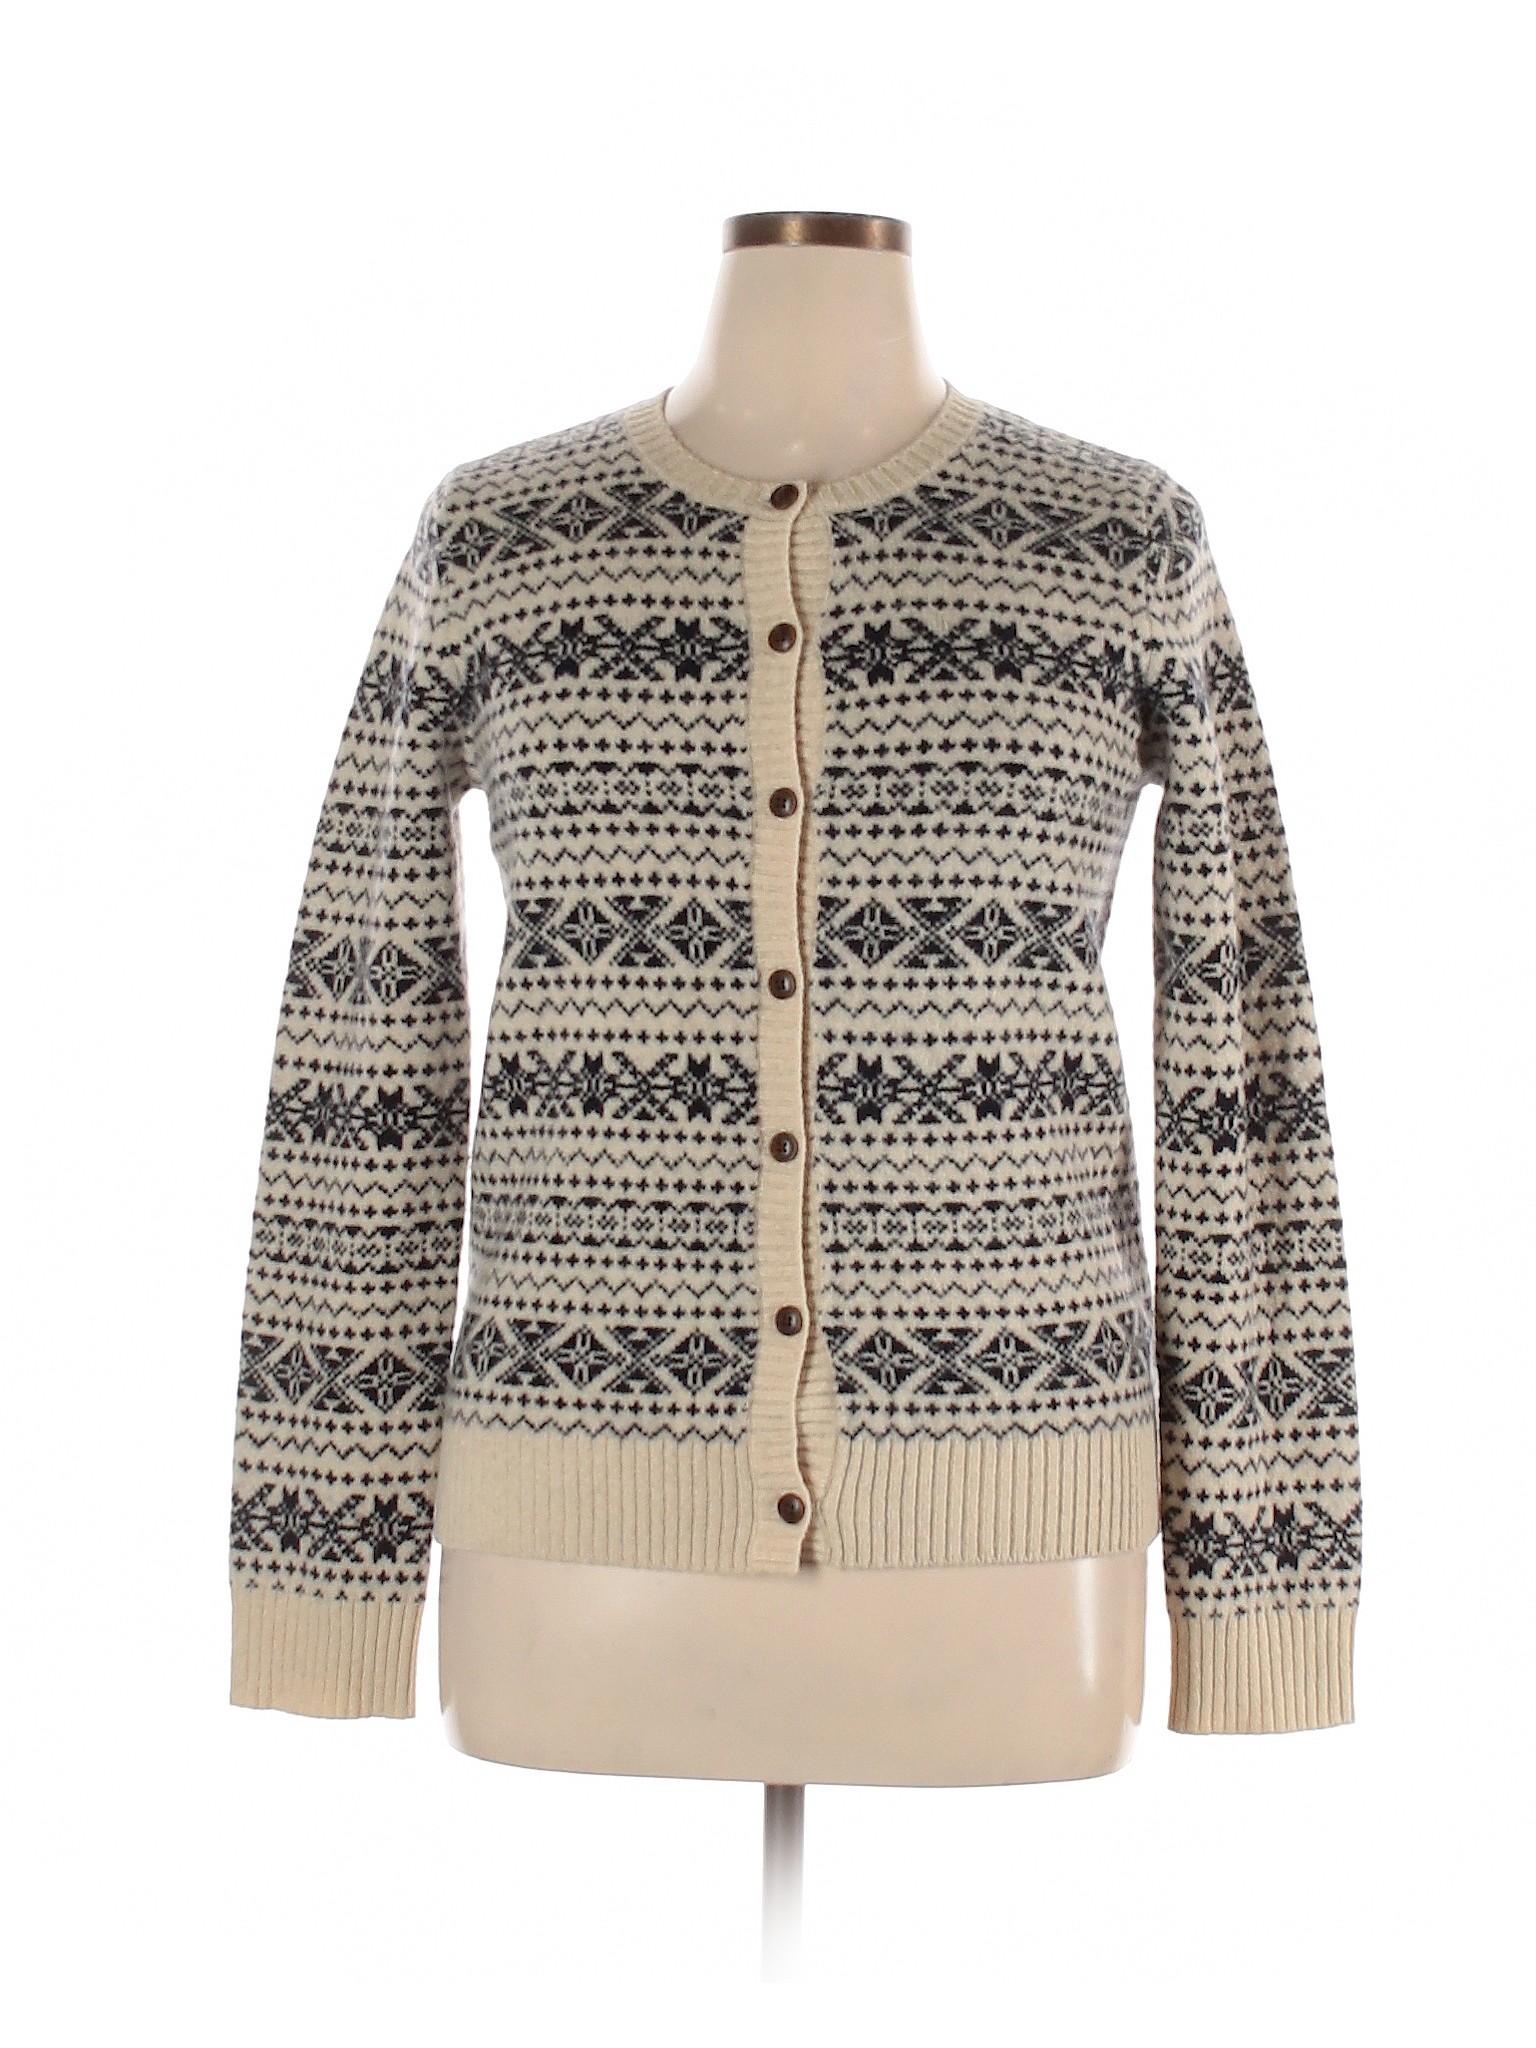 Ines de la Fressange for Uniqlo Women Brown Wool Cardigan L | eBay